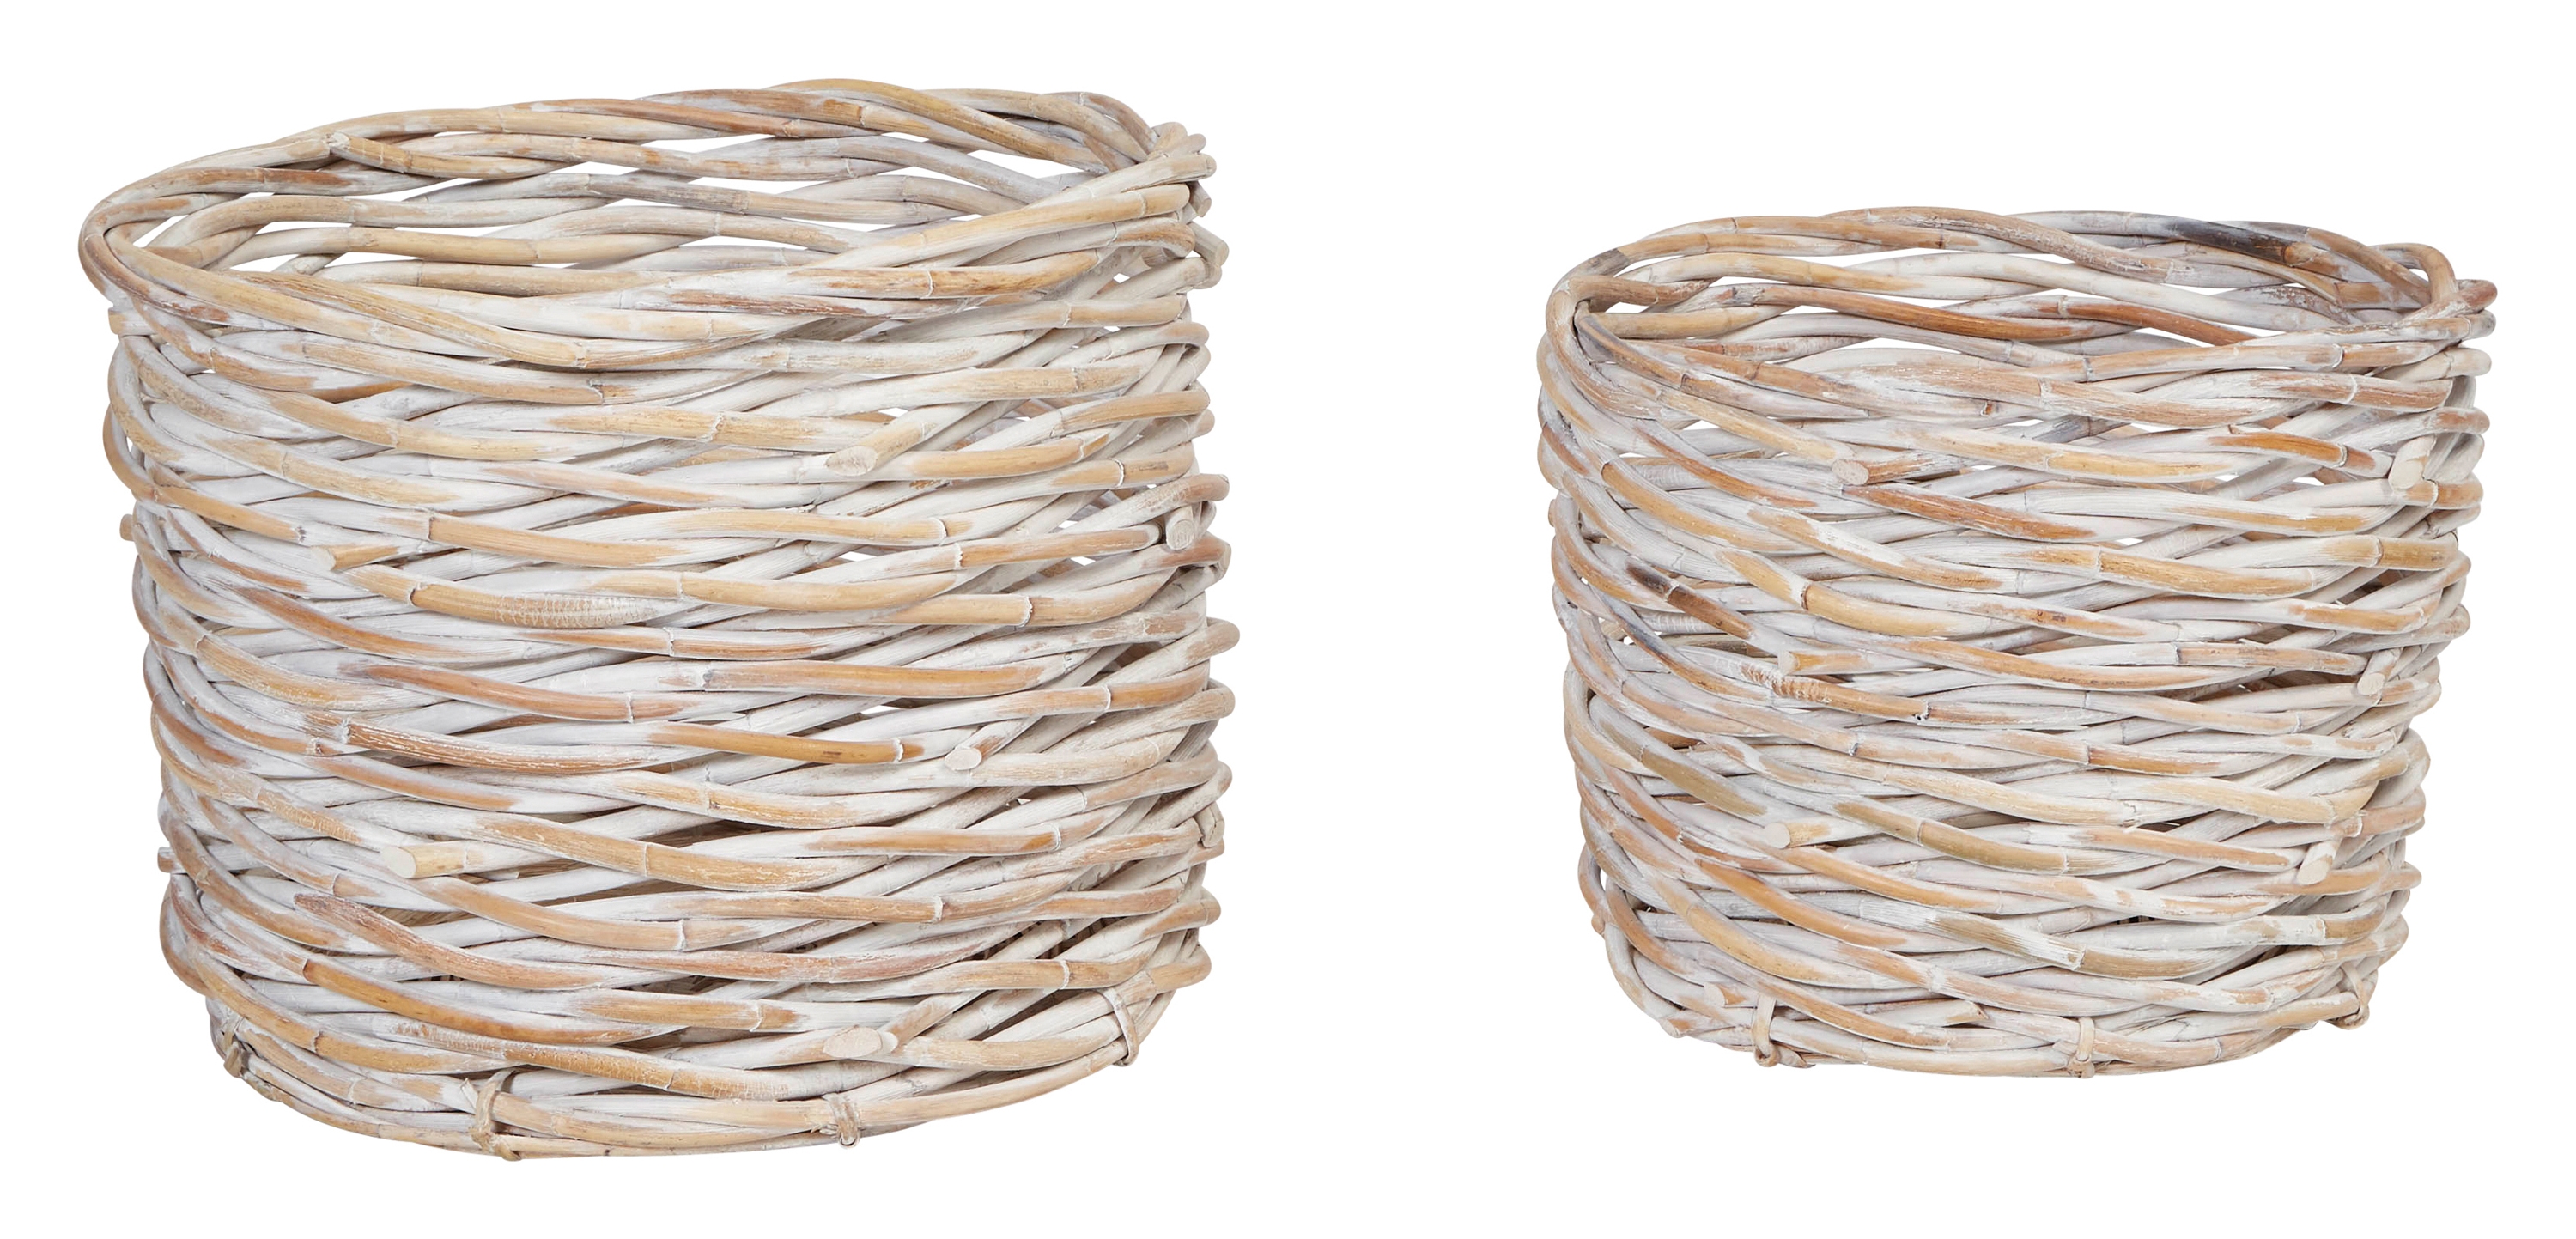 Handwoven Arurog Baskets with Whitewashed Finish (Set of 2 Sizes) - Image 0